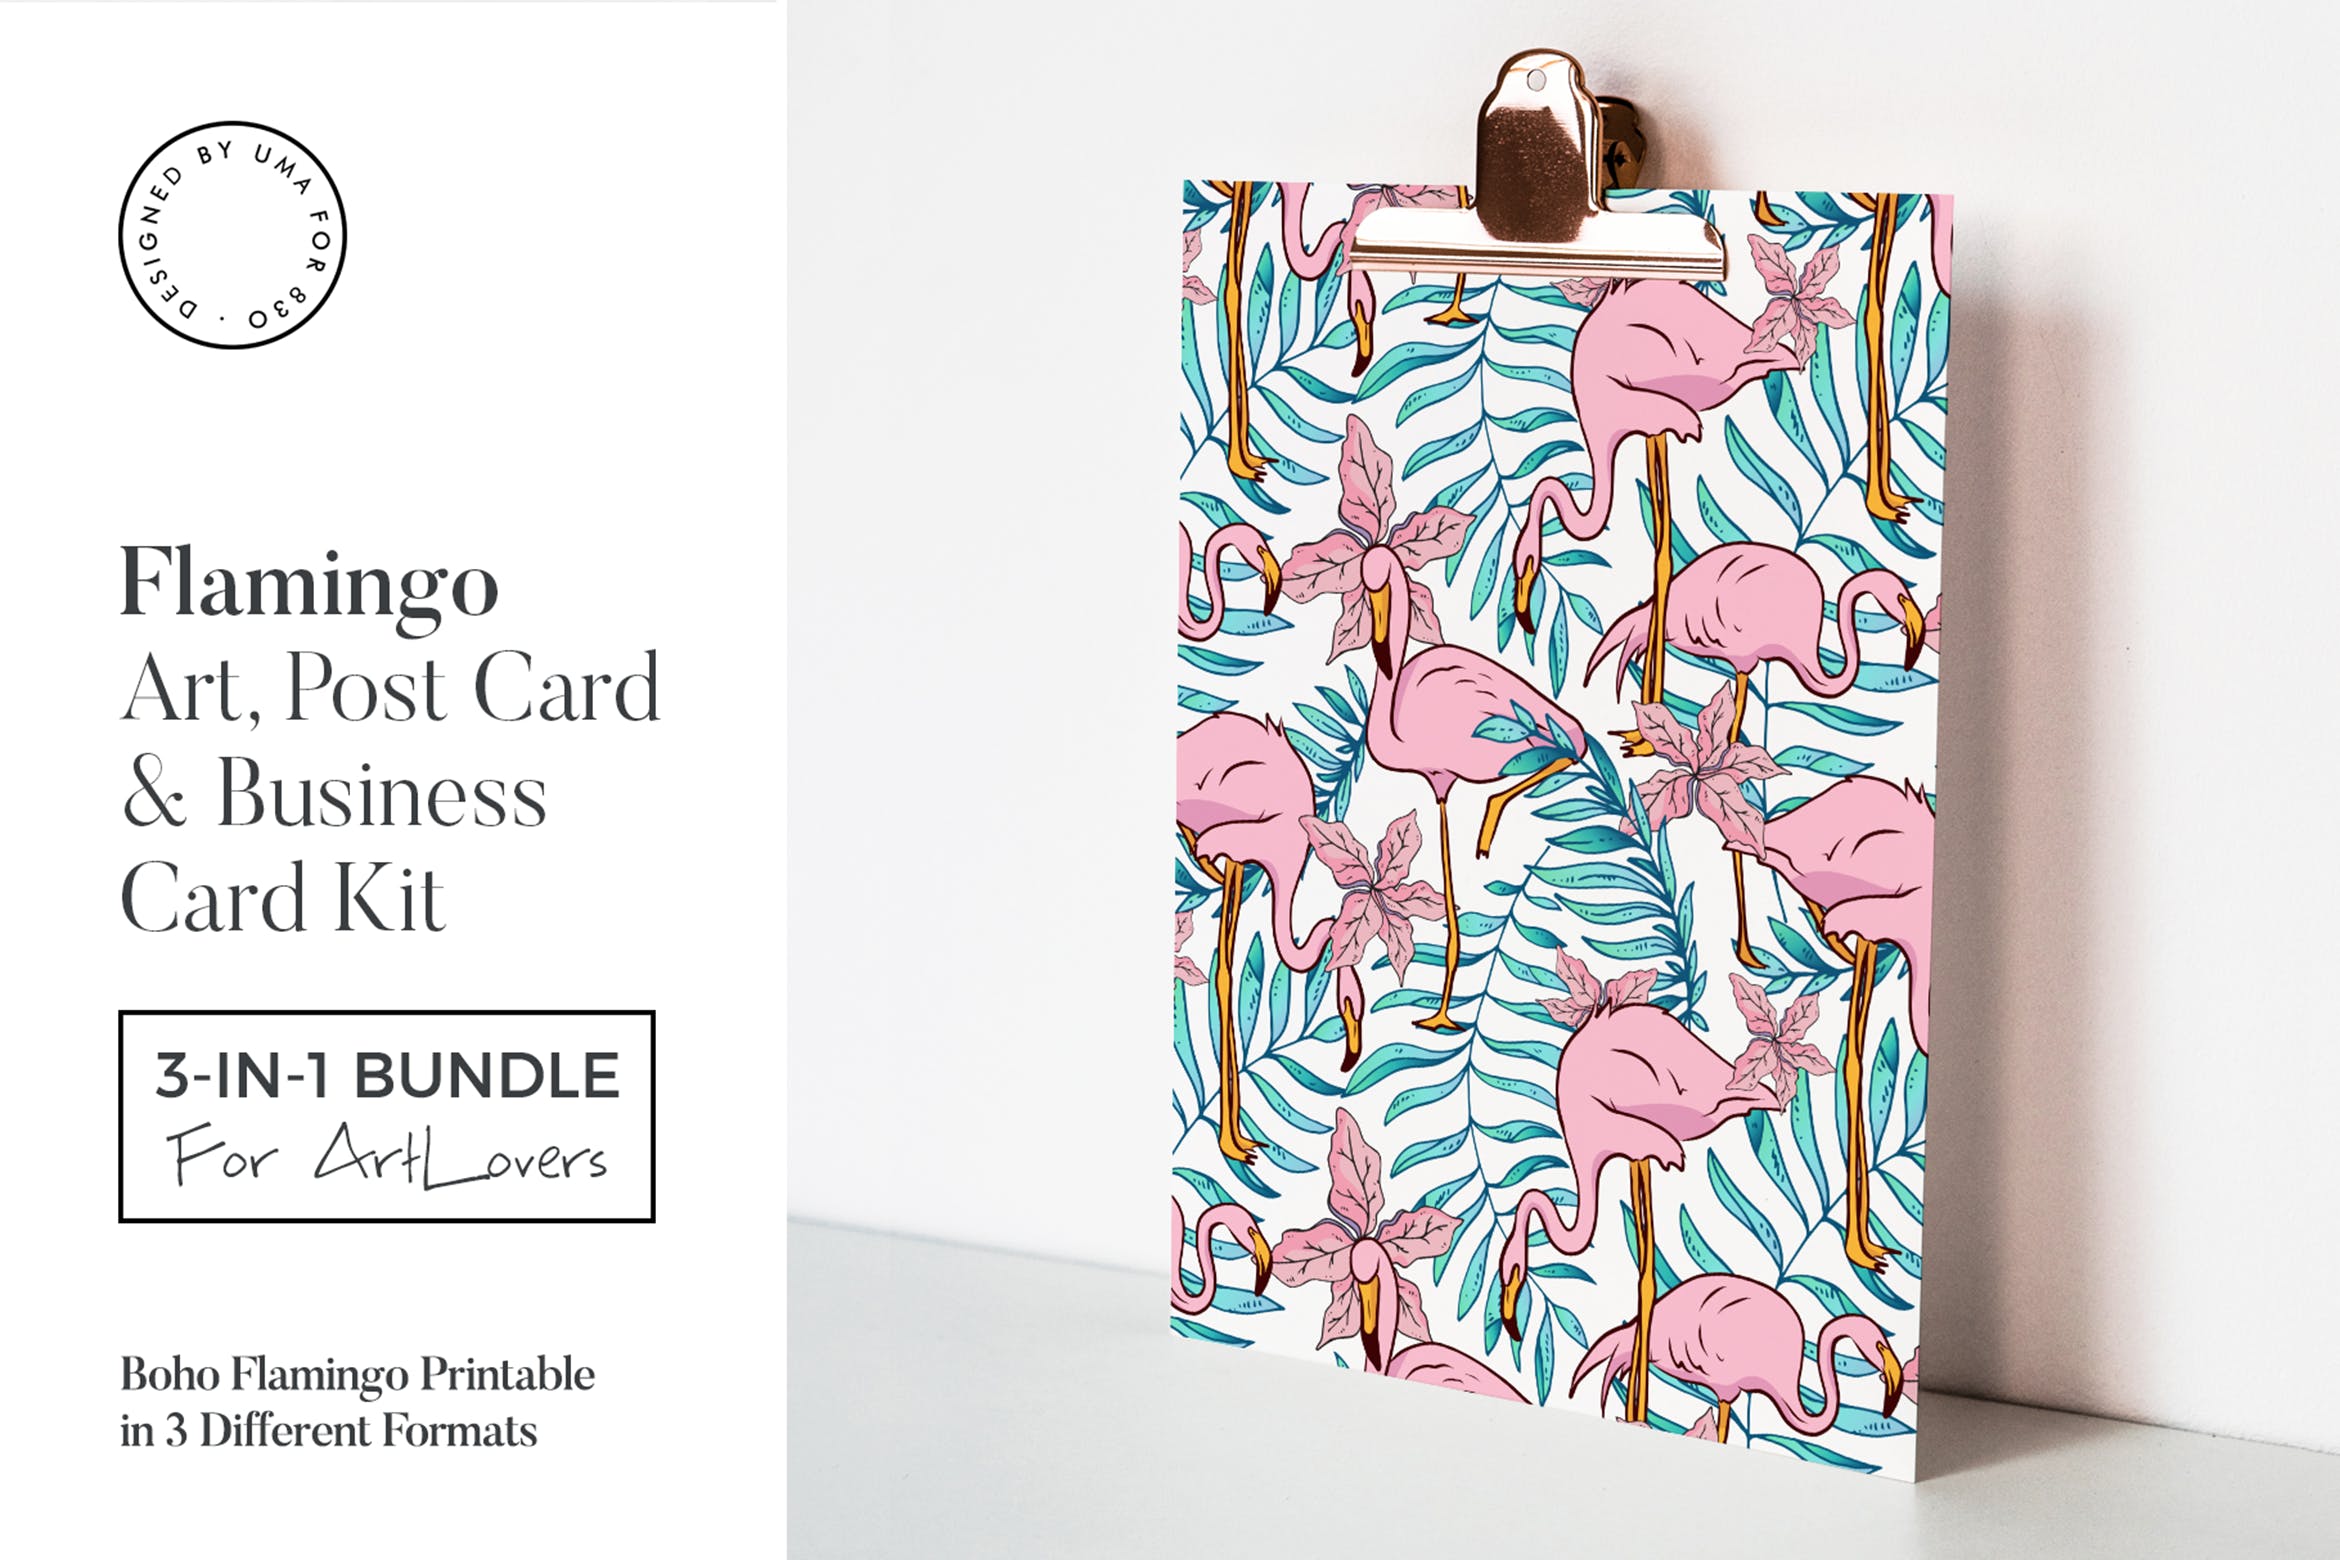 波西米亚火烈鸟水彩艺术办公文具设计套装 Boho Flamingo Art & Stationary Kit插图